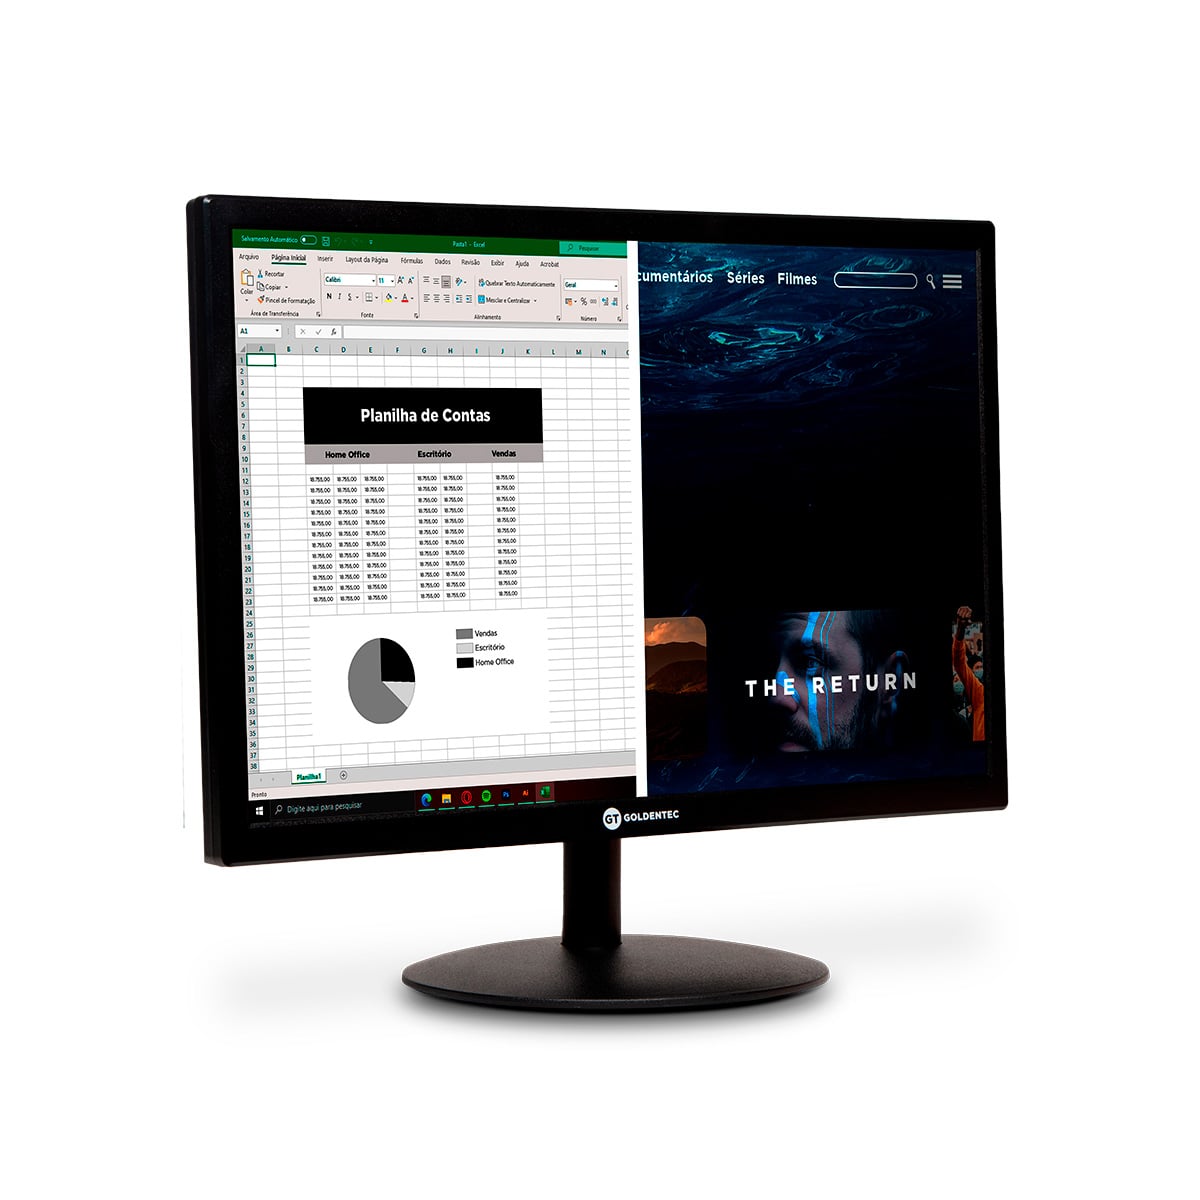 Monitor LED 15.4 Widescreen com HDMI | GT